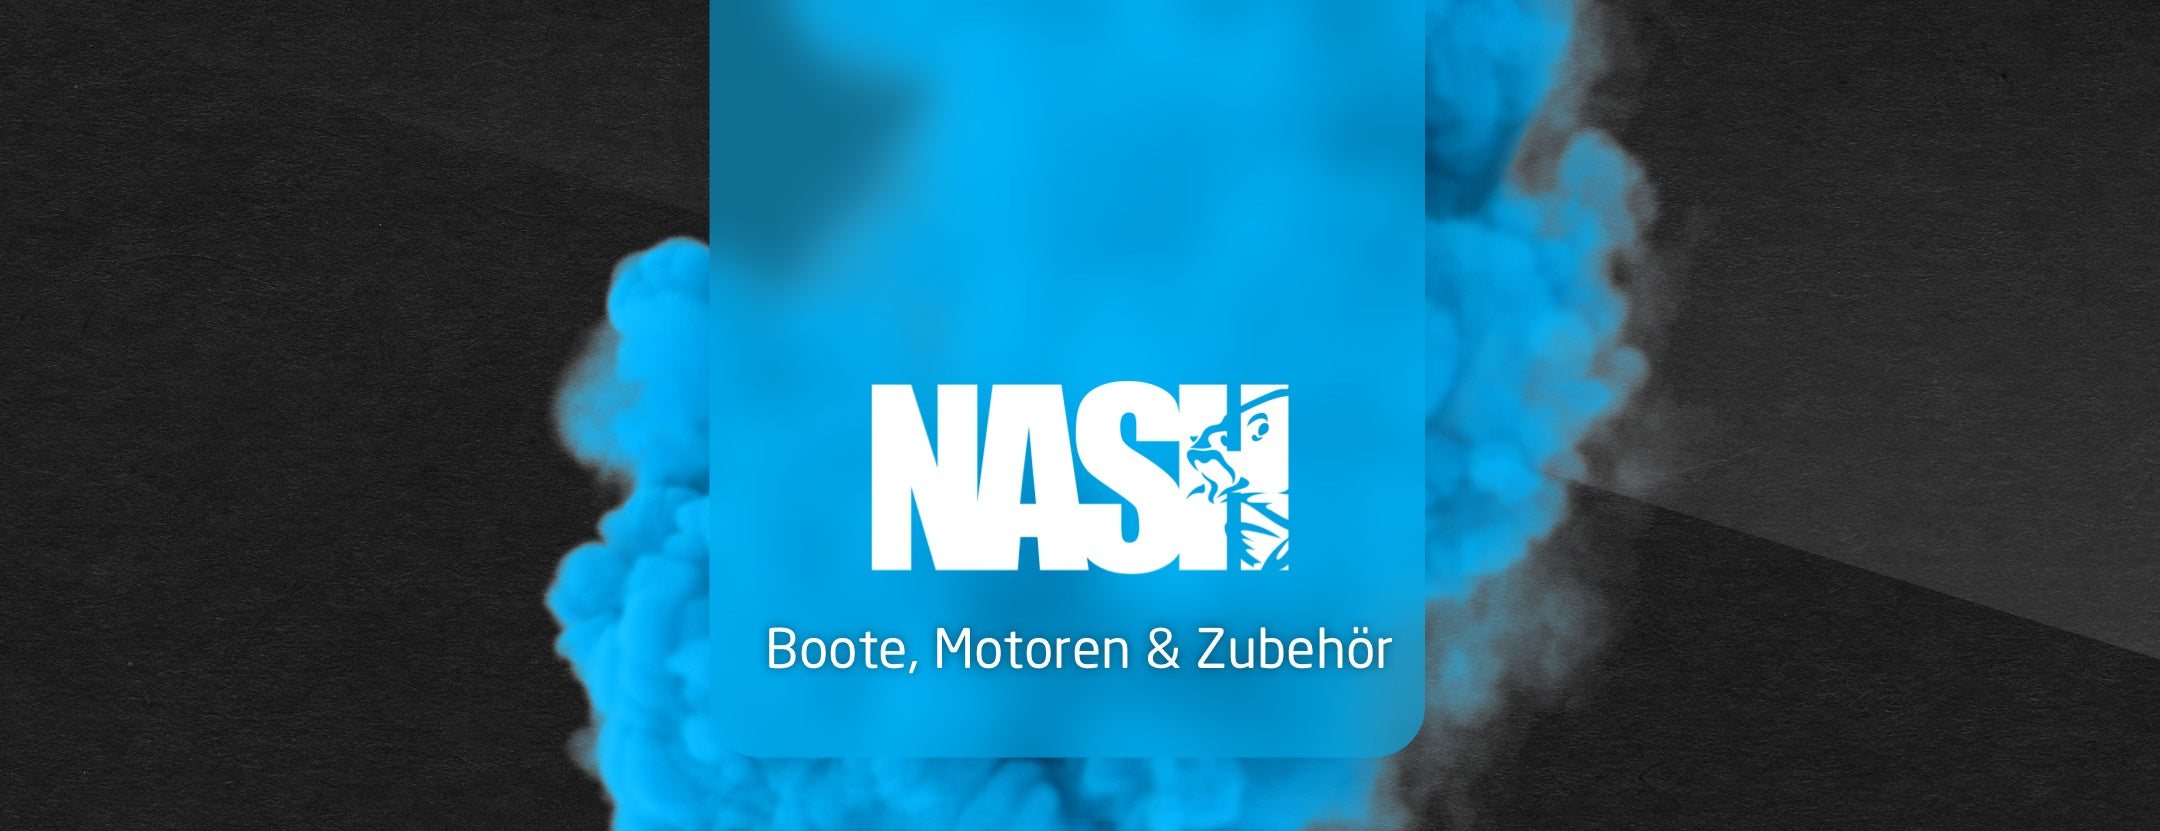 Nash-Boote-Motoren-Zubehör